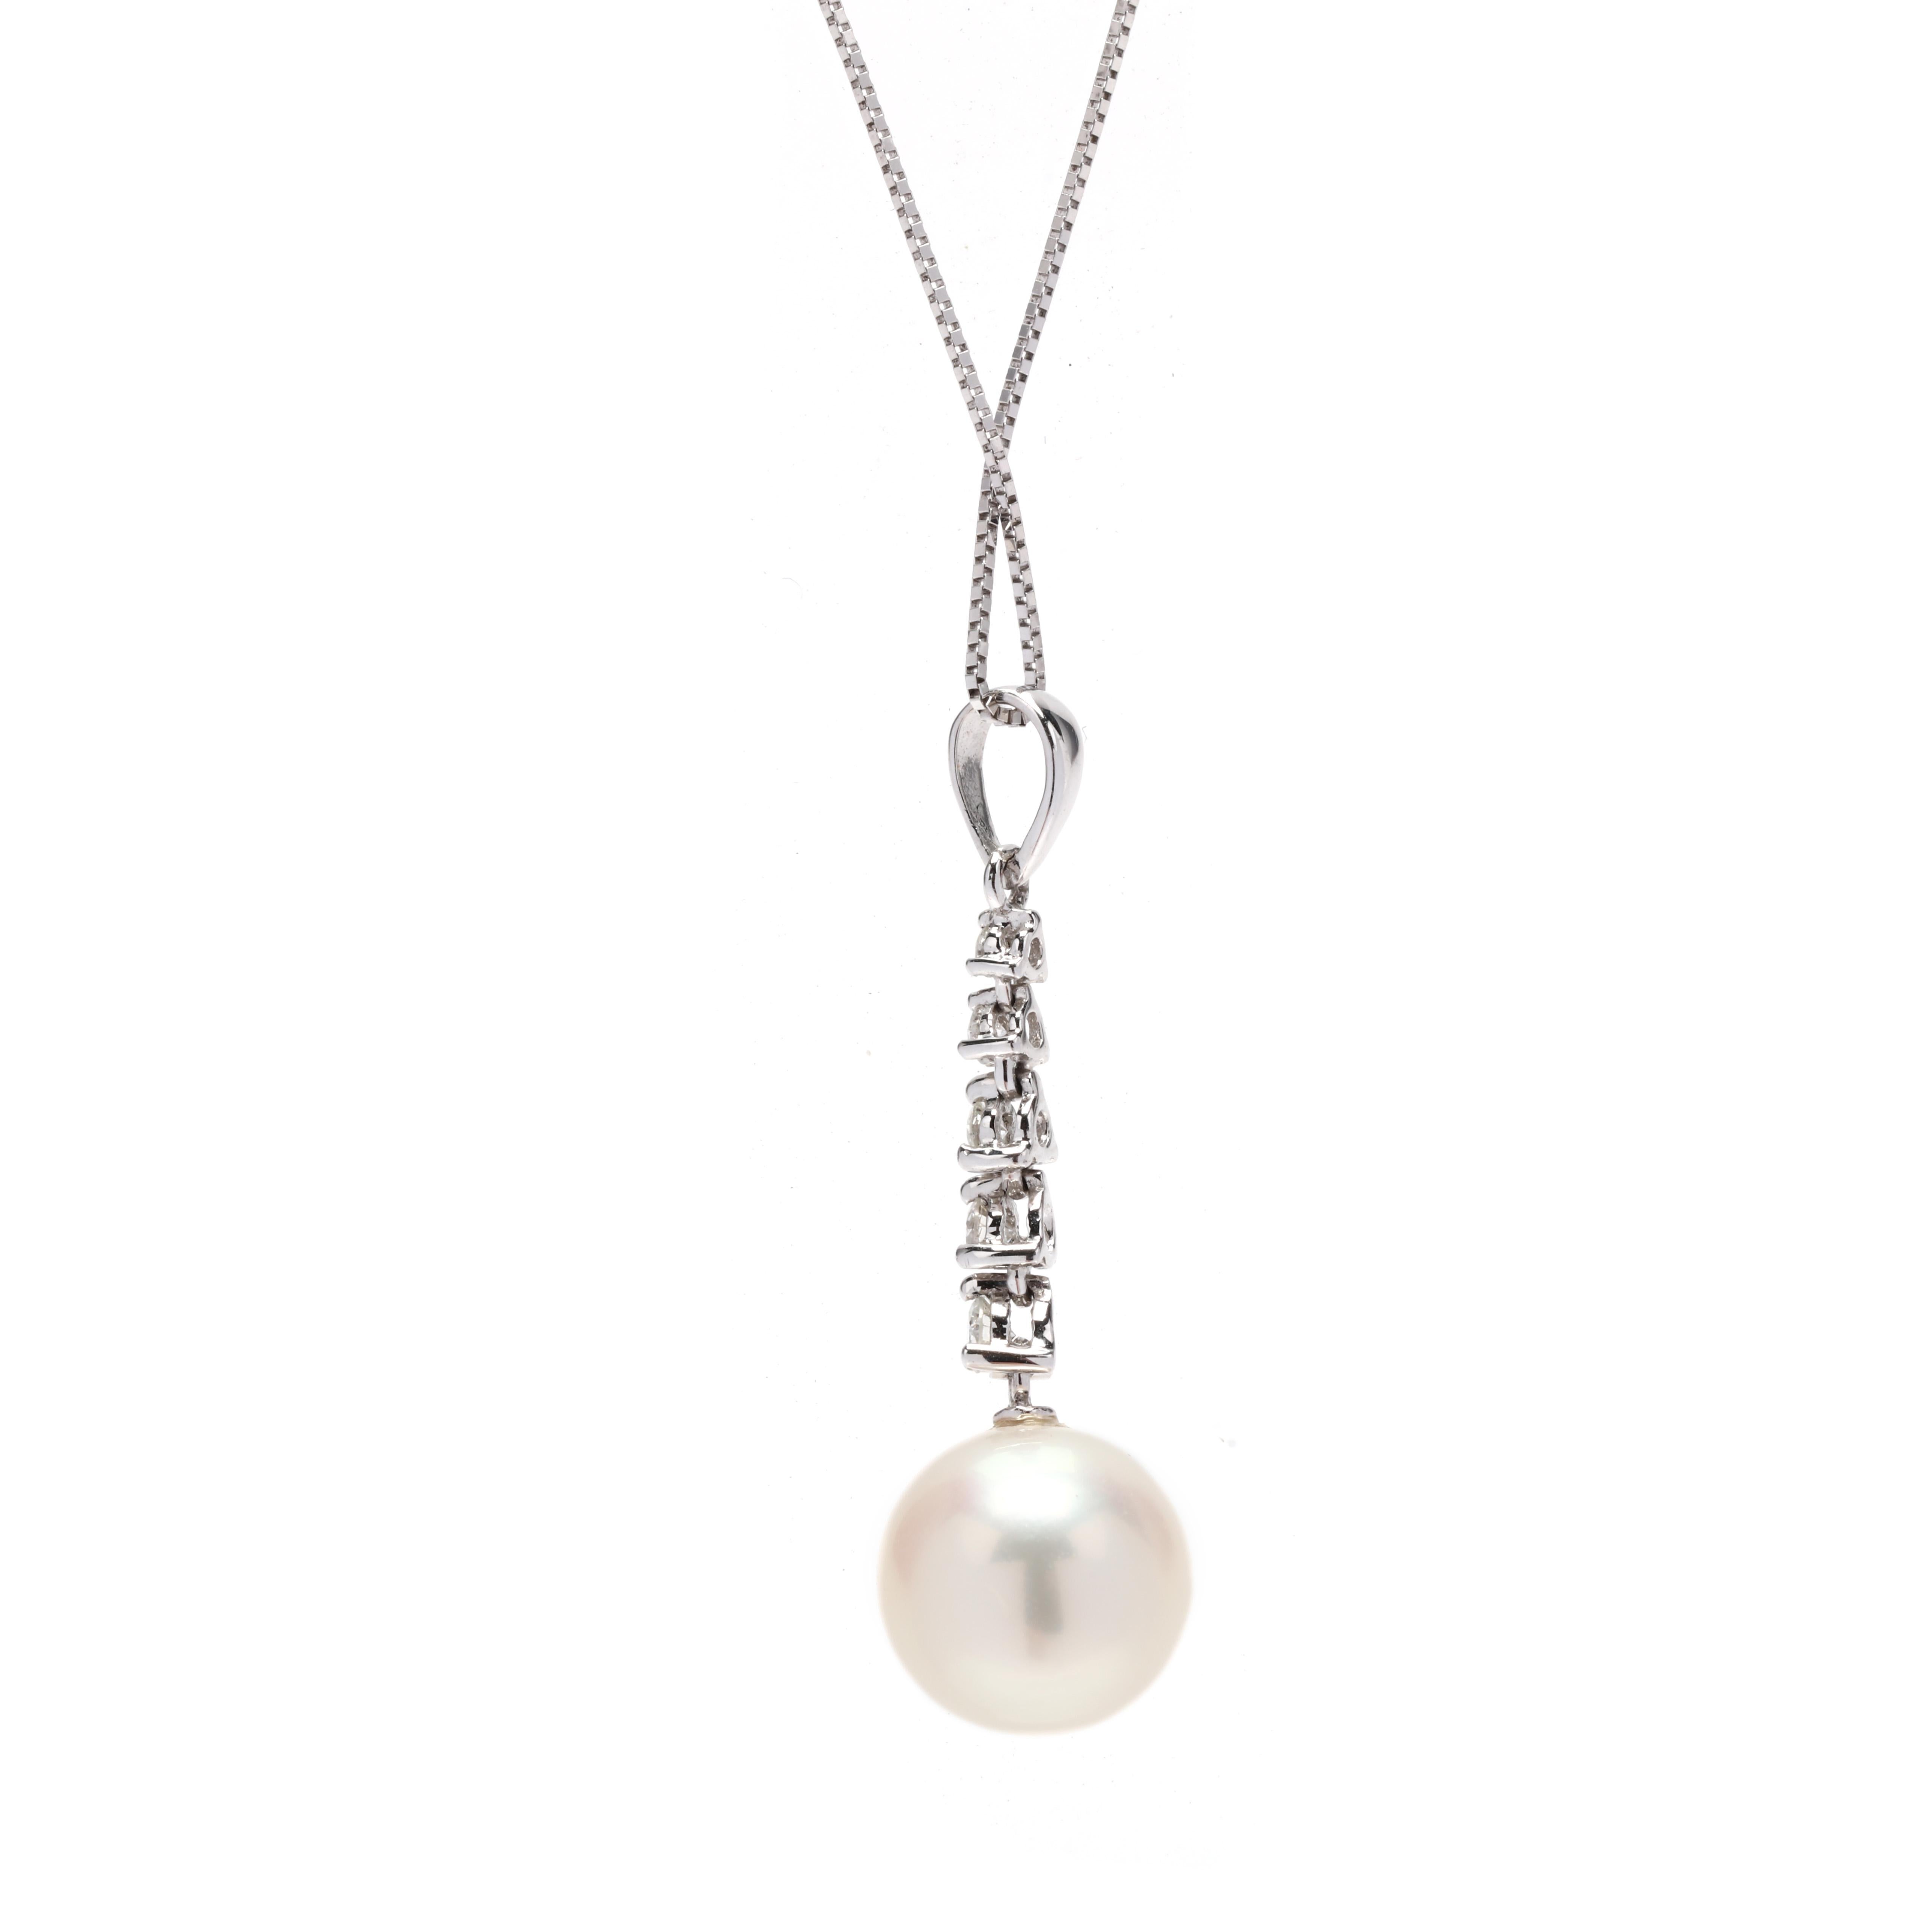 Collier de perles et de diamants en or blanc 14 carats. Ce collier de perles de tous les jours présente un design effilé de diamants ronds de taille brillante, sertis sur la pointe, pesant environ 0,14 carats au total, ainsi qu'une perle blanche de